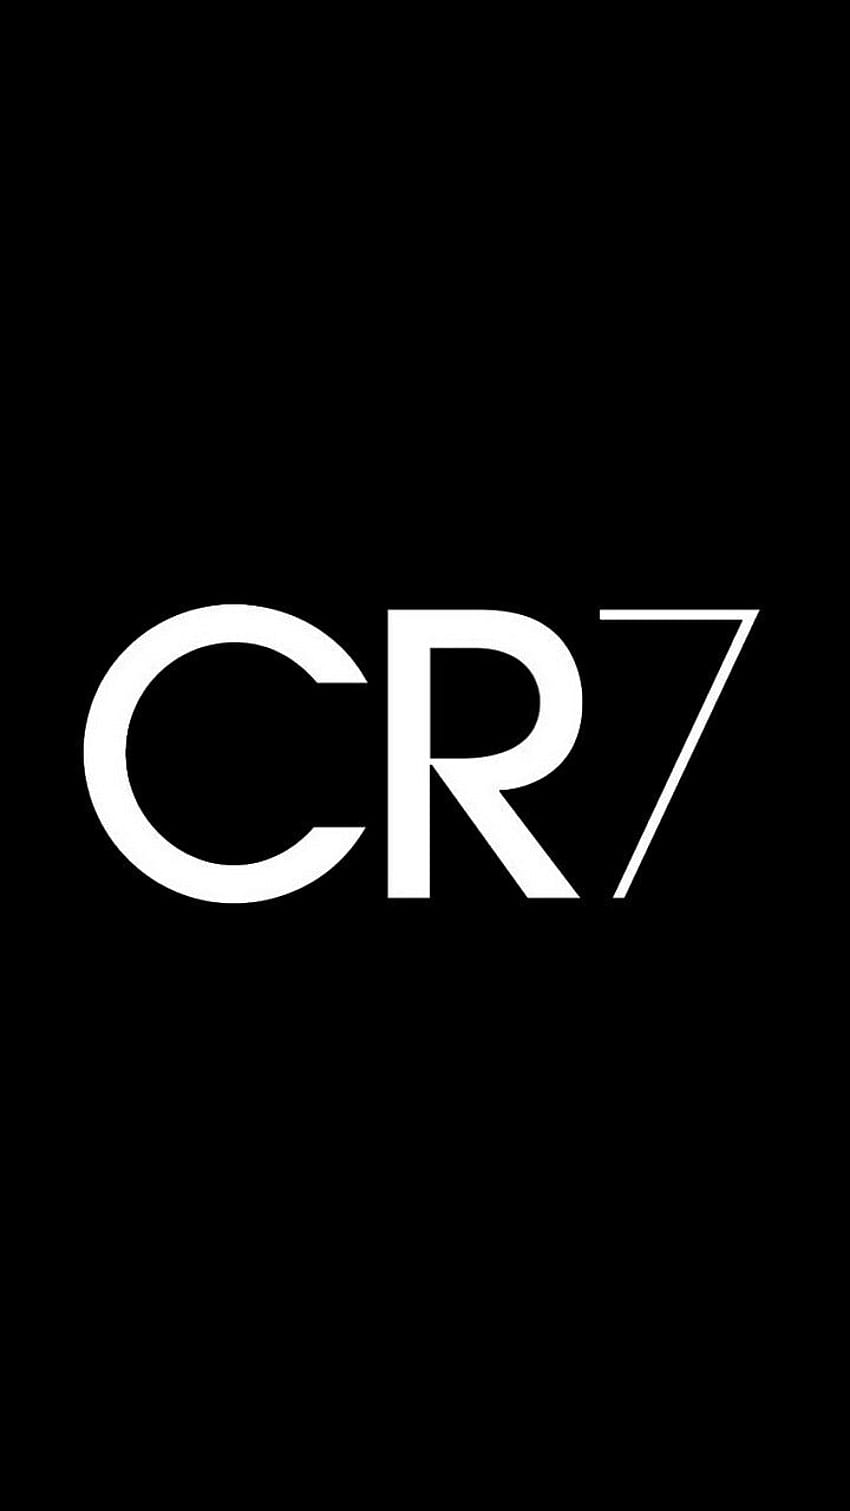 Logo Cr7 dla Androida. Styl Cristiano Ronaldo, Real Madryt Cristiano Ronaldo, piłka nożna Ronaldo Tapeta na telefon HD